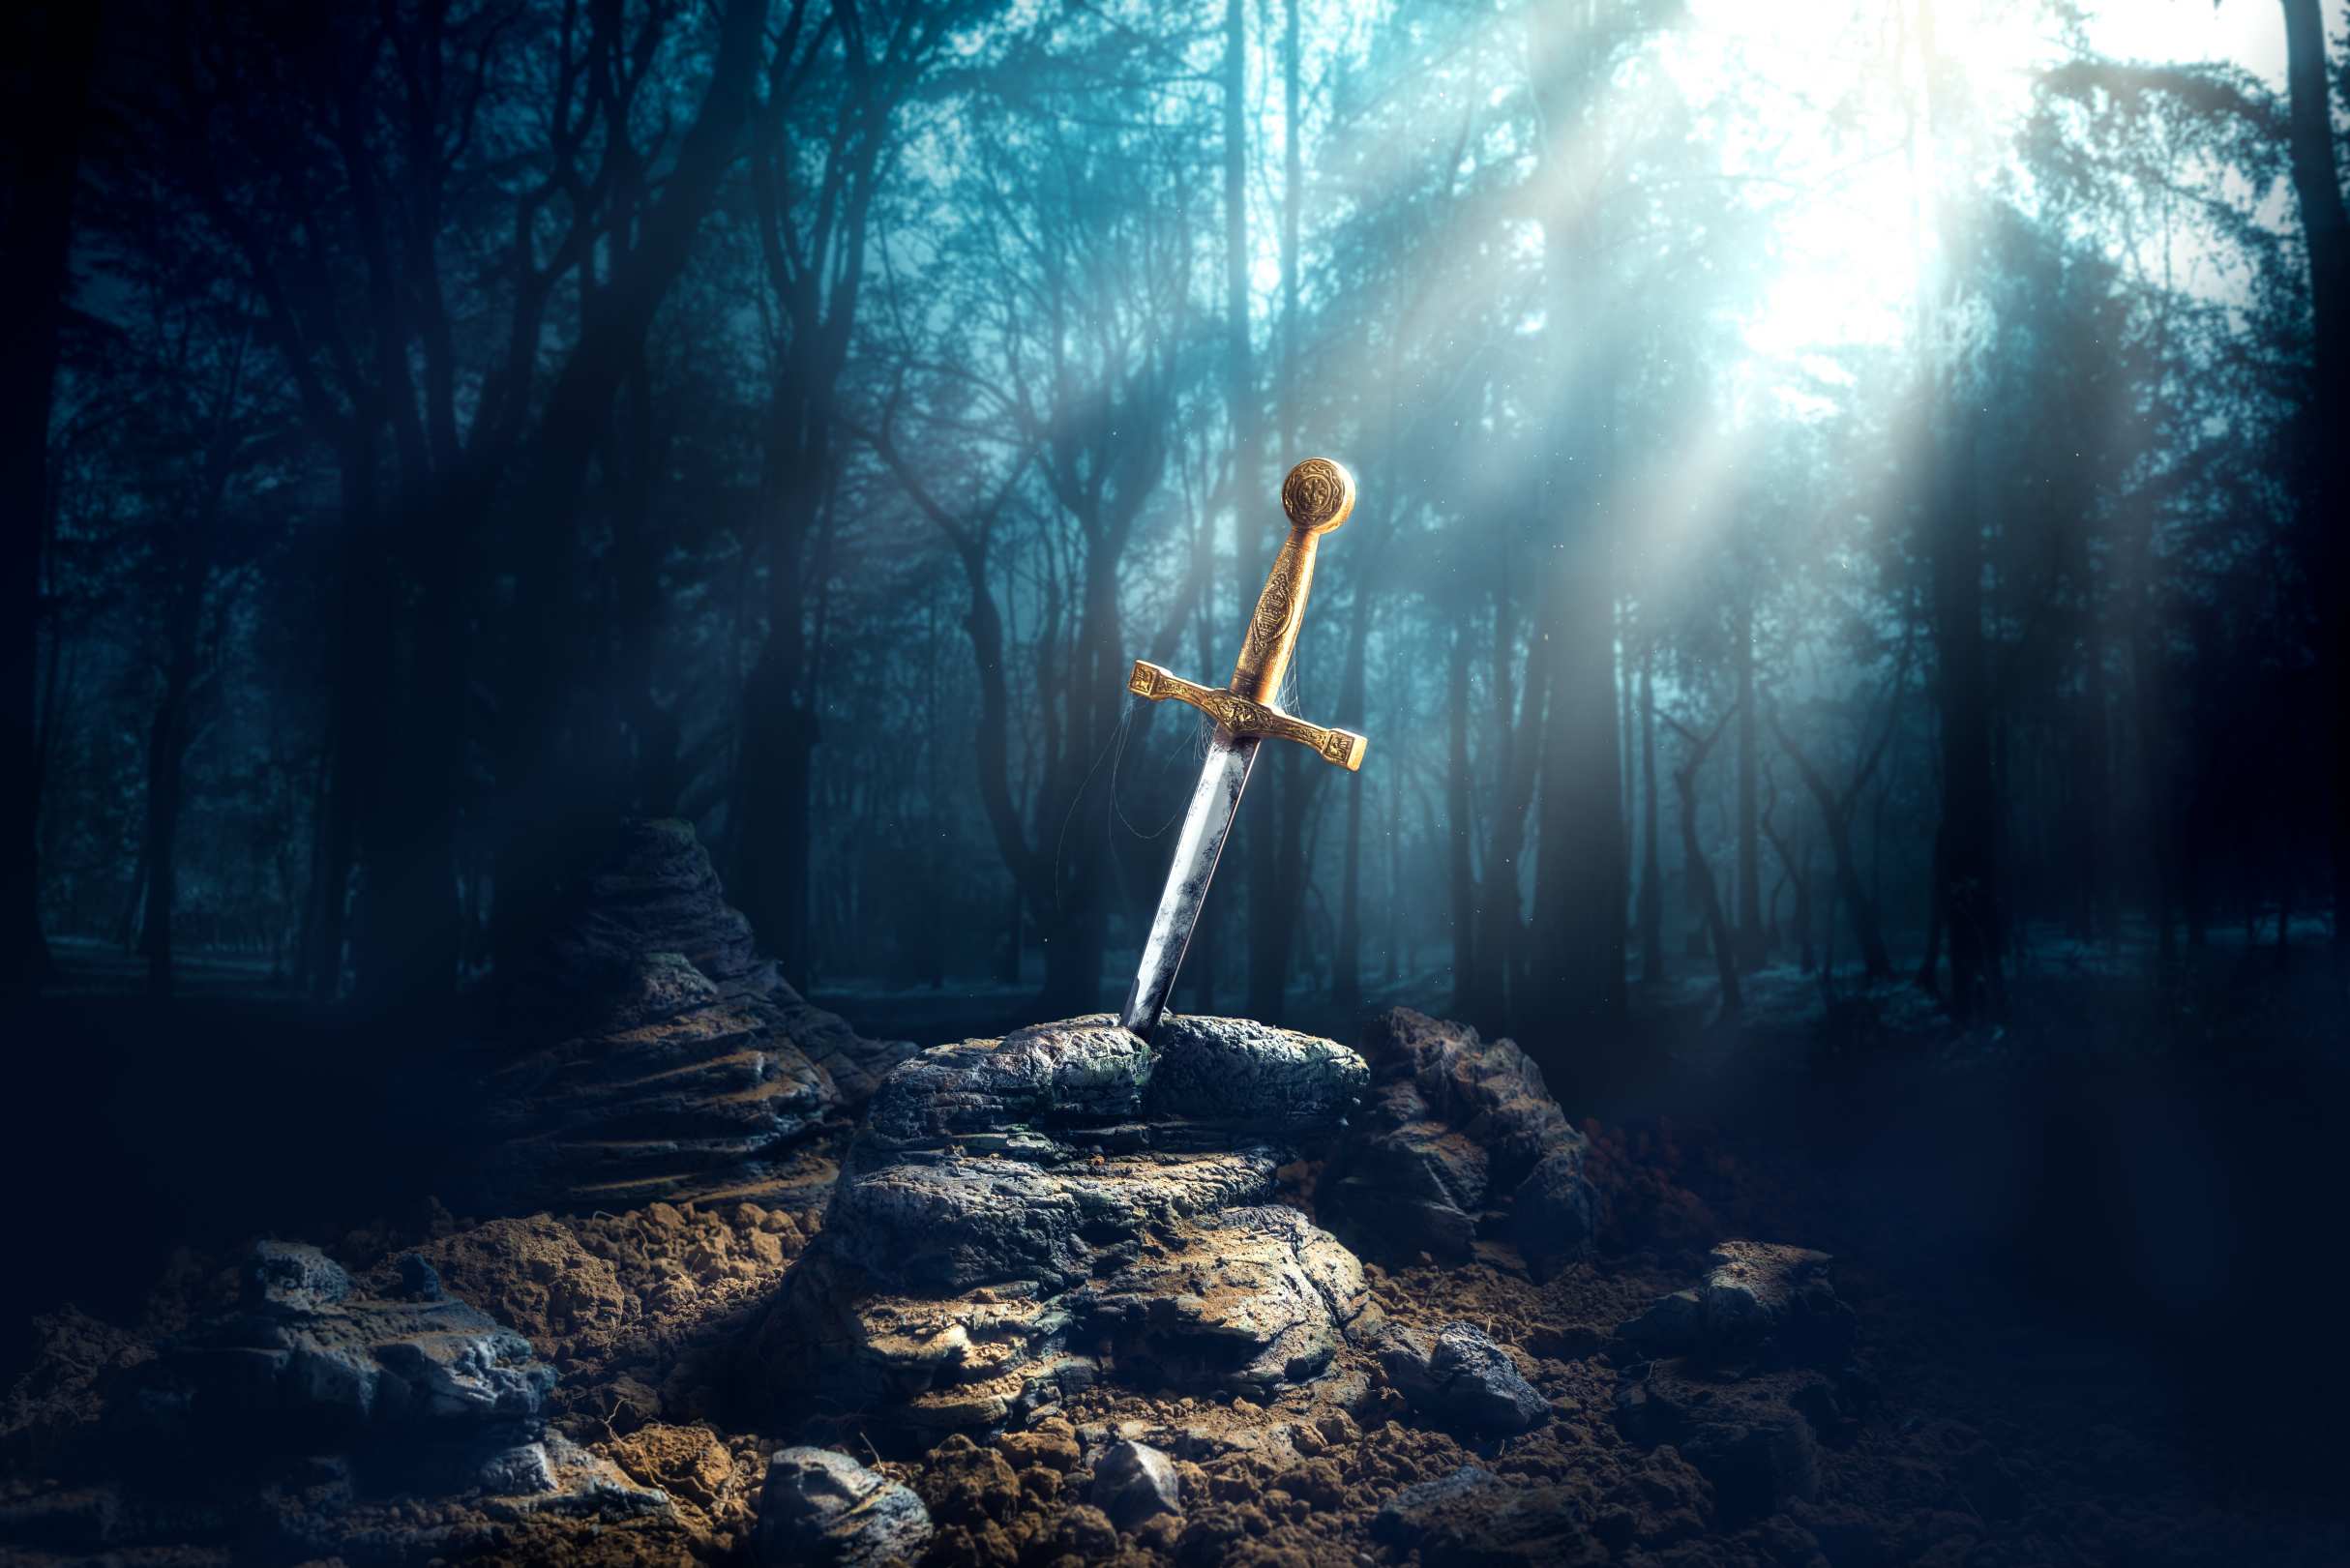 Excalibur, karanlık bir ormanda ışık ışınları ve toz özellikleri ile taş kılıç